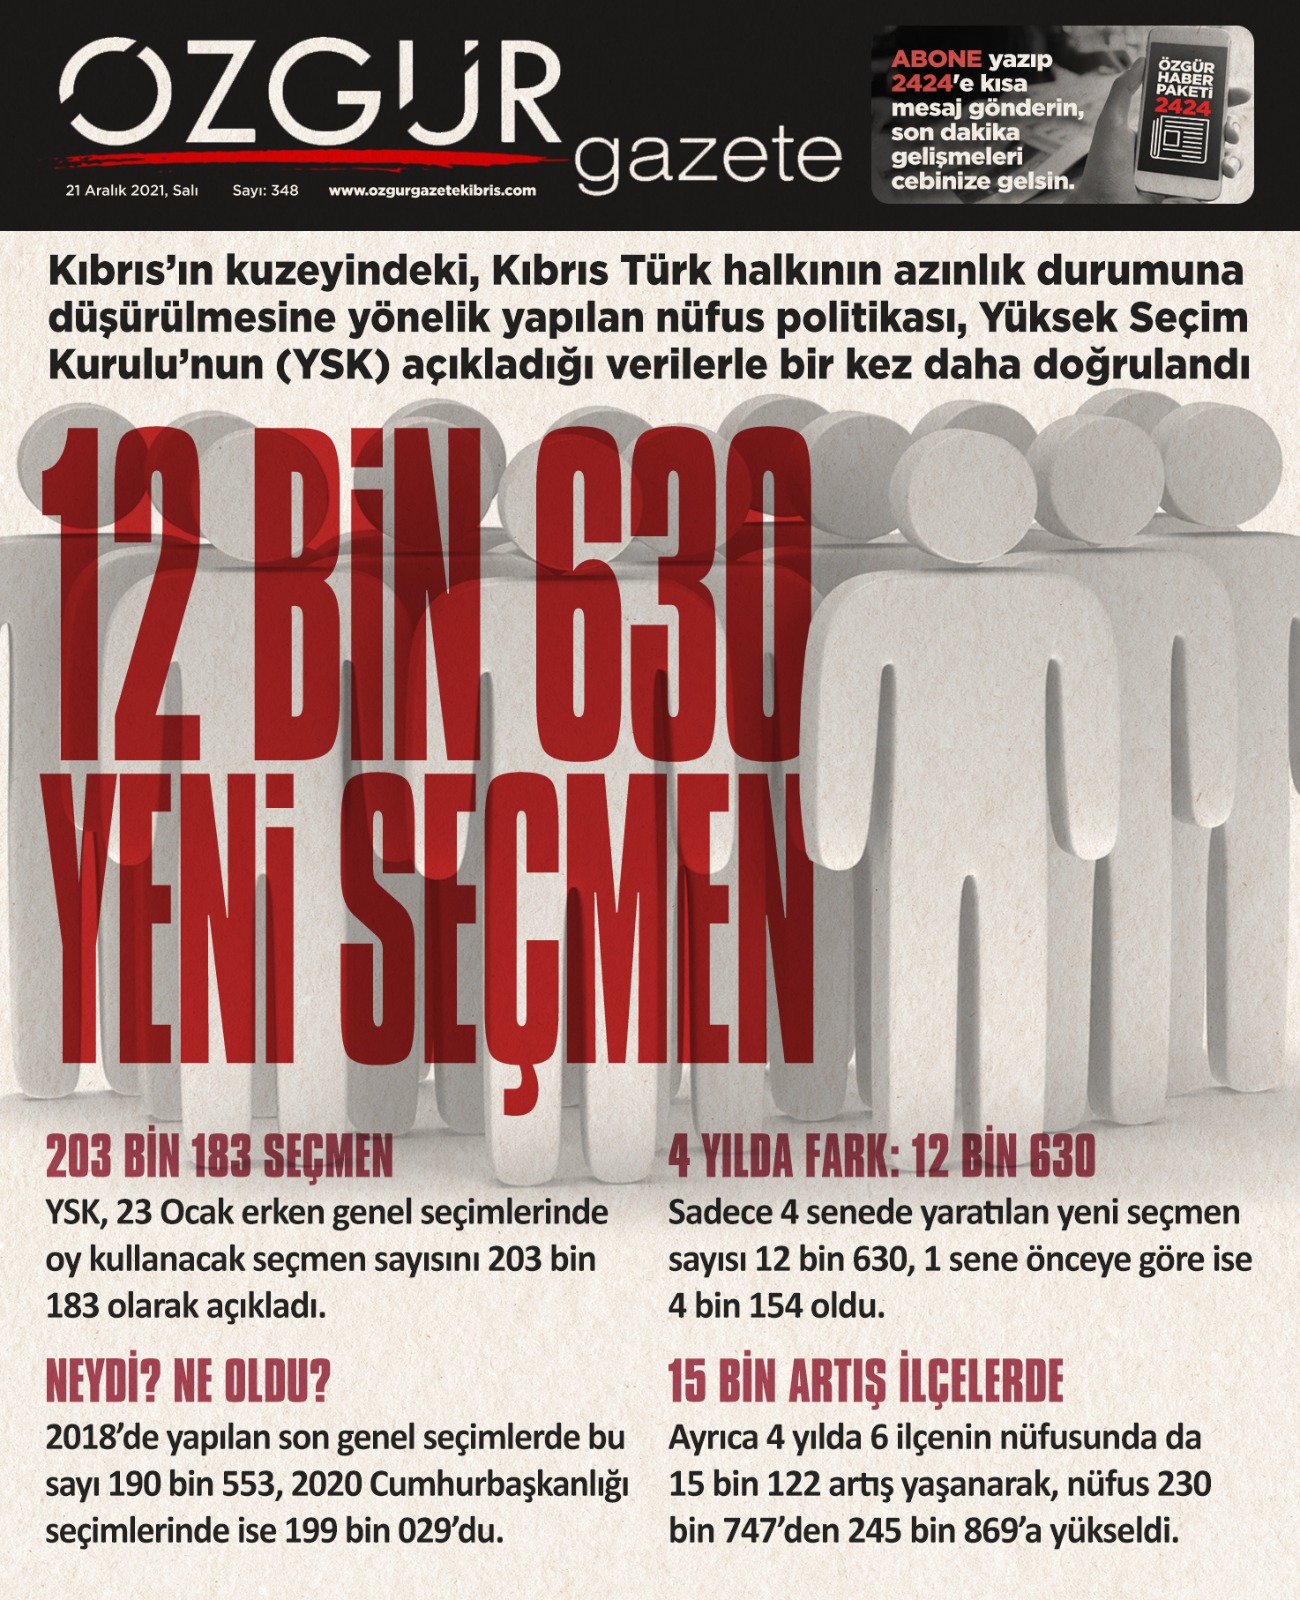 ozgur_gazete_kibris_yeni_secmen_ysk